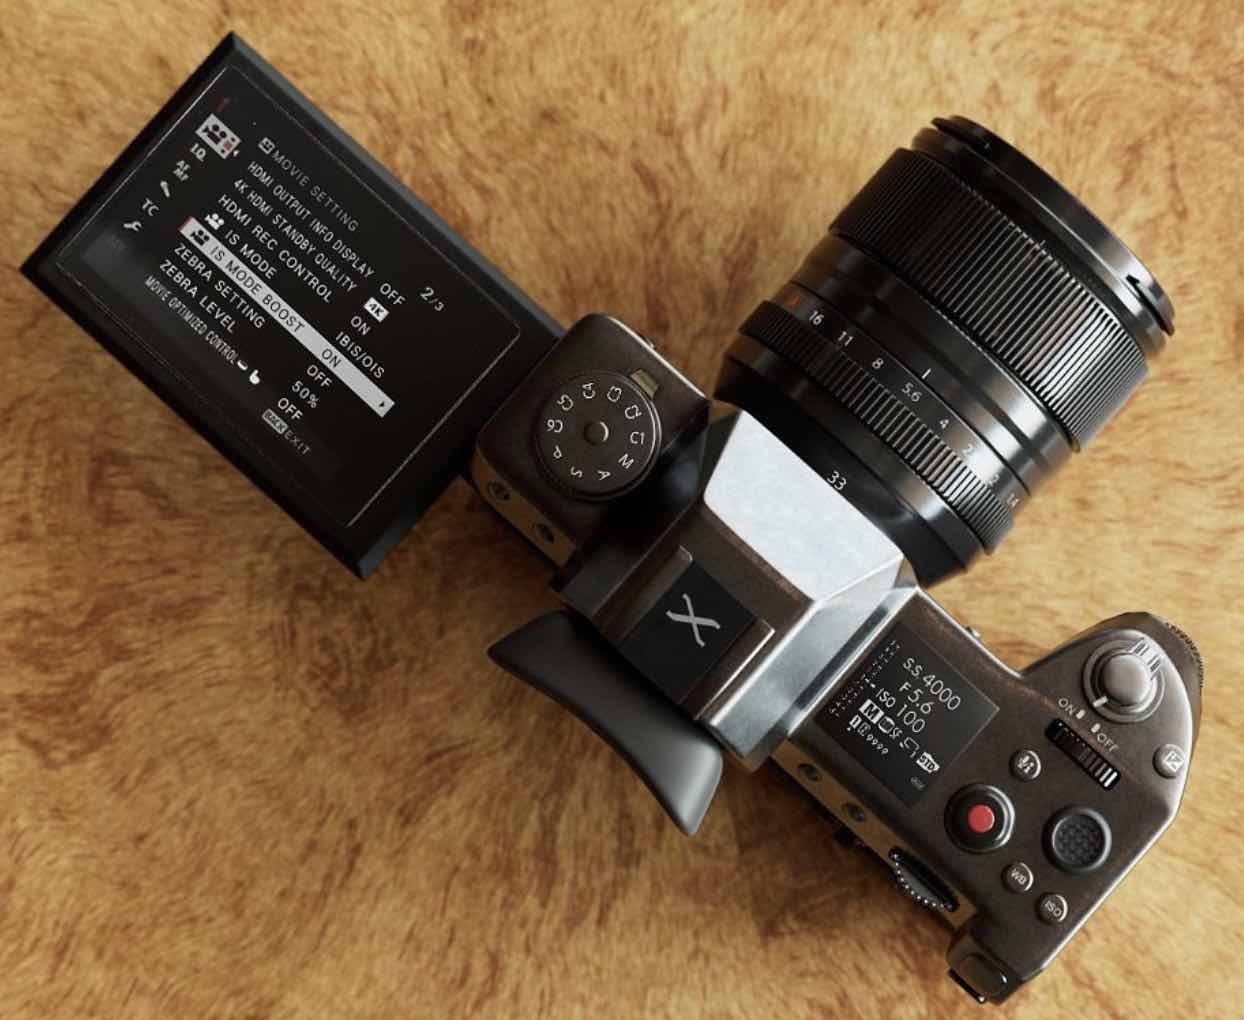 Fujifilm X-H2s sẽ là tên cho phiên bản 26MP của chiếc máy ảnh X-H mới ra mắt năm nay